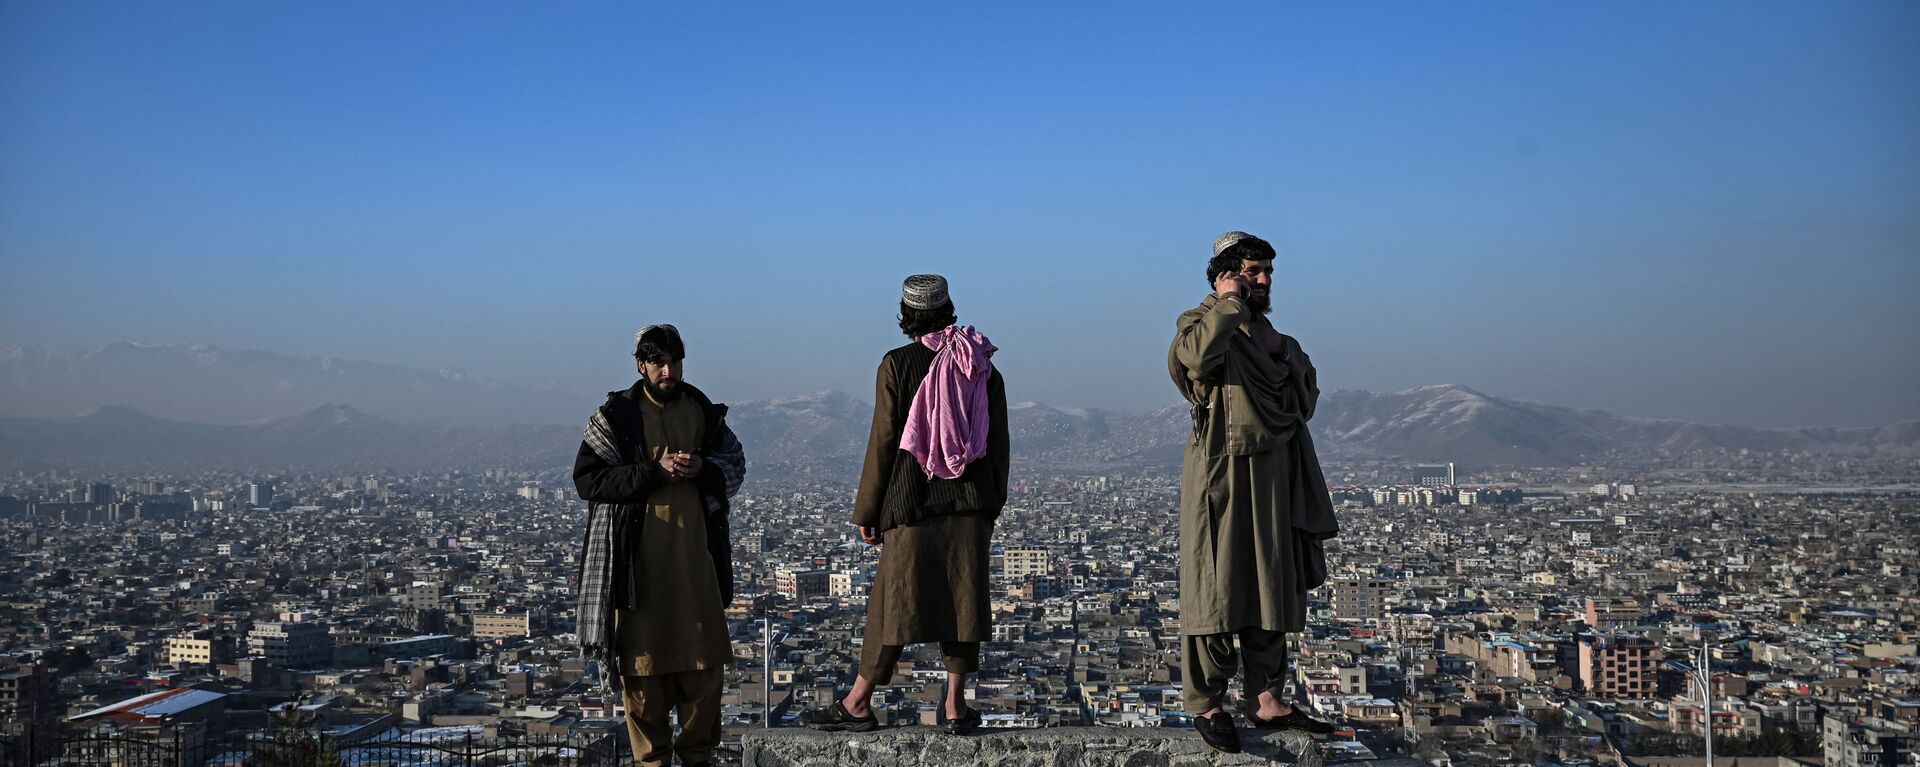 عناصر من حركة طالبان يقفون فوق قاعدة تطل على مدينة كابول عند تلة الوزير أكبر خان في كابول، أفغانستان 10 يناير 2022. - سبوتنيك عربي, 1920, 18.05.2022